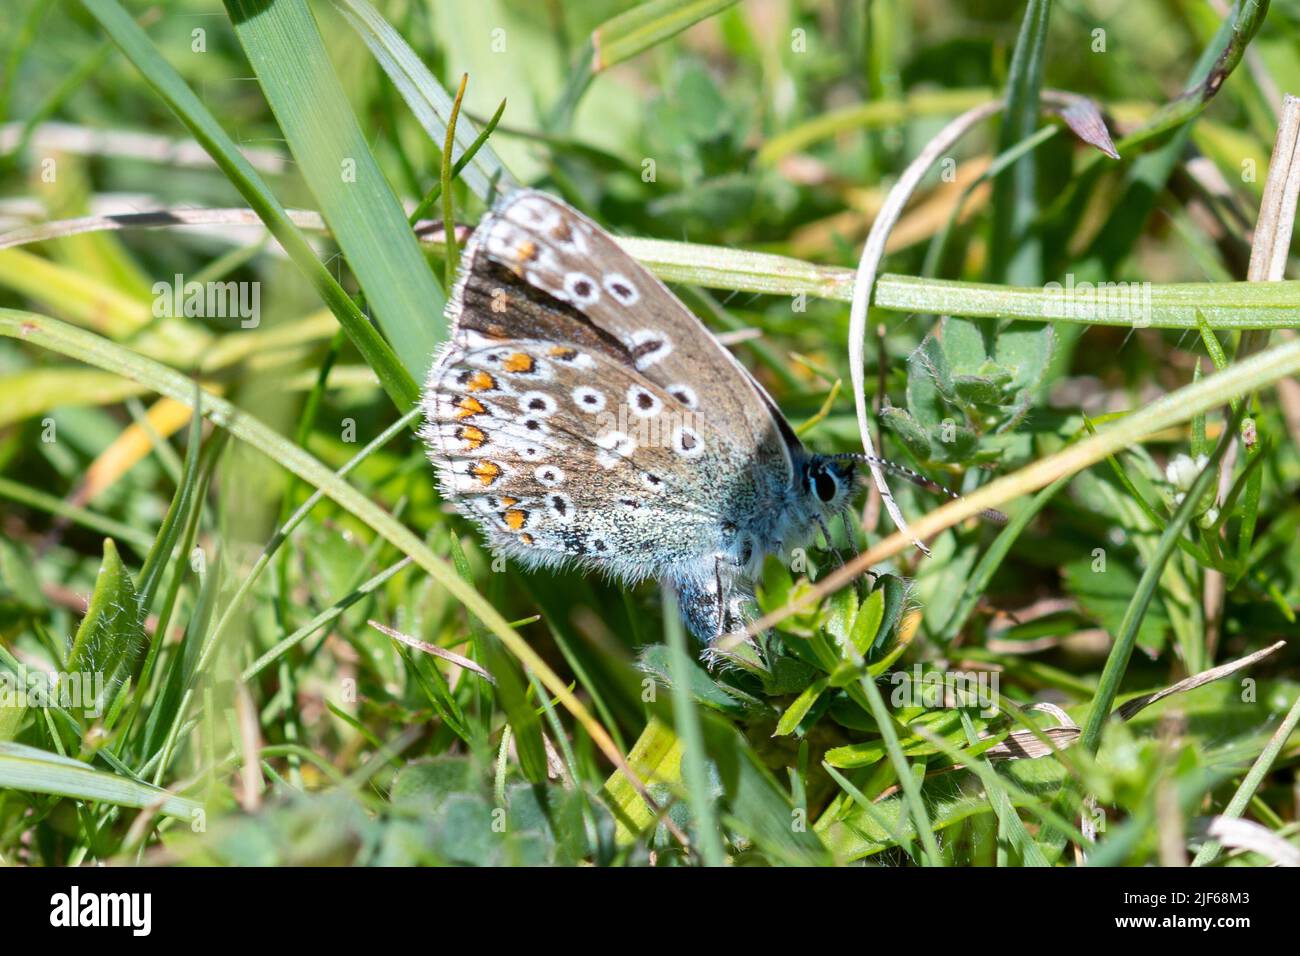 Papillon bleu commun femelle (Polyommatus icarus) oviposting (ponte des œufs) sur le trèfle de pied d'oiseau (Lotus corniculatus) Banque D'Images